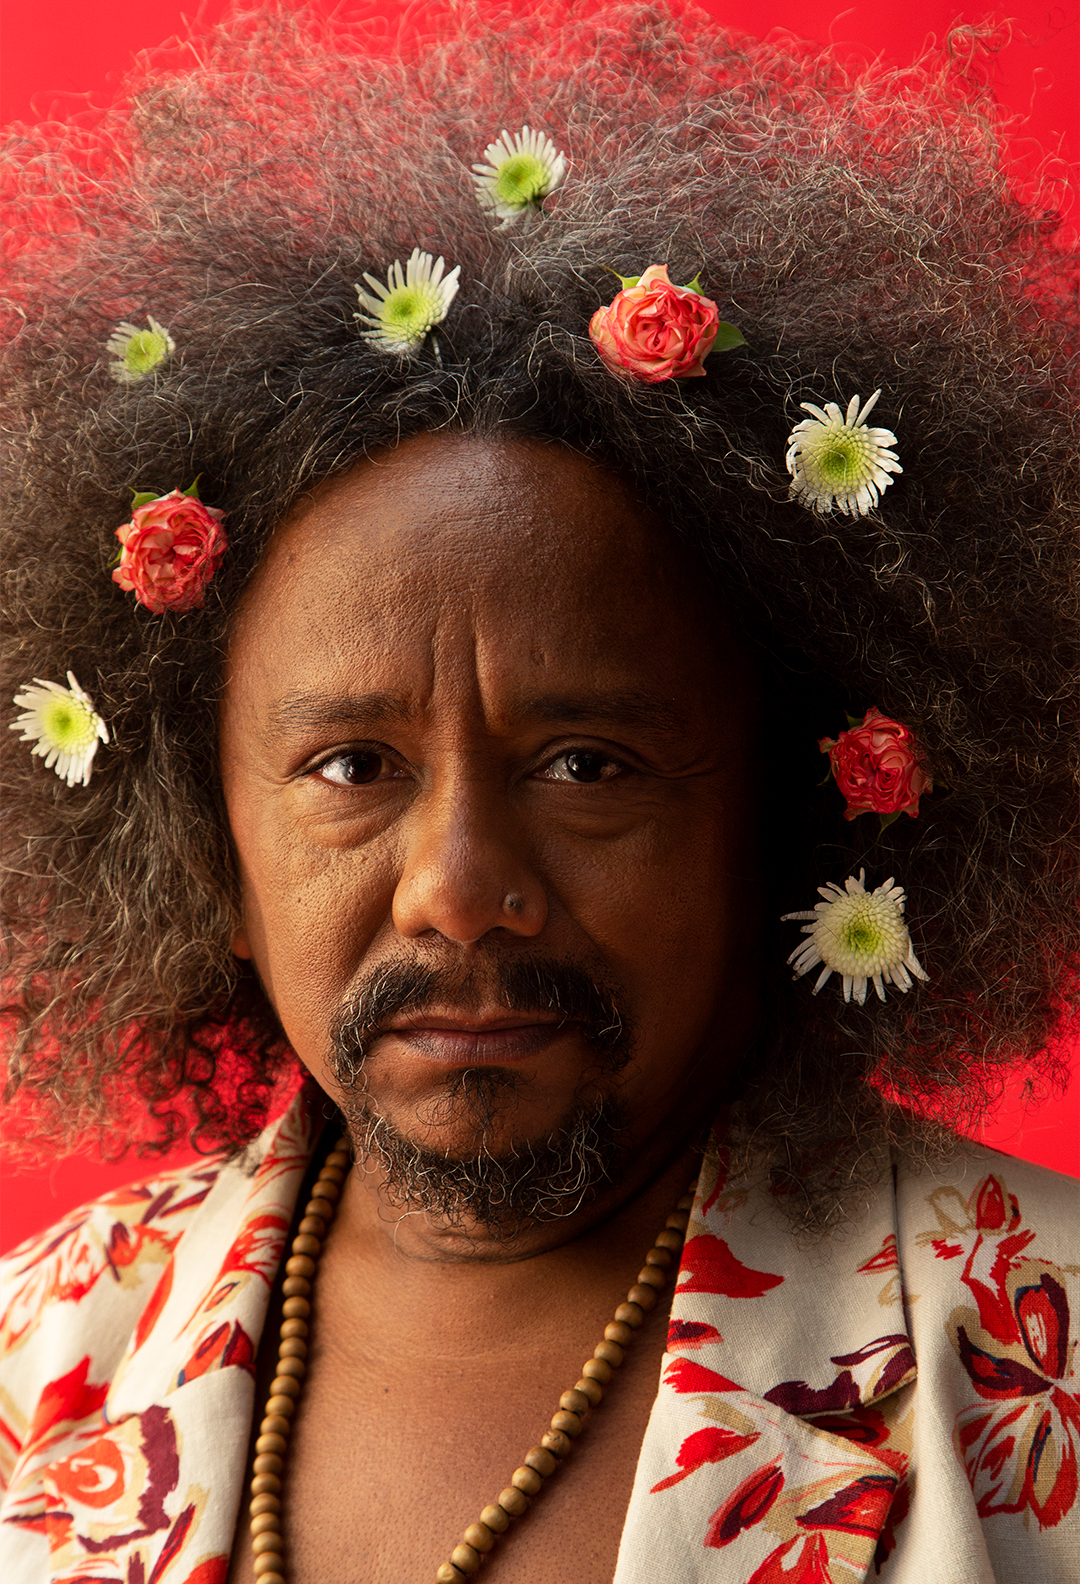 Fotografia do cantor e compositor Chico César. Ele veste um blazer florido e tem flores no cabelo.